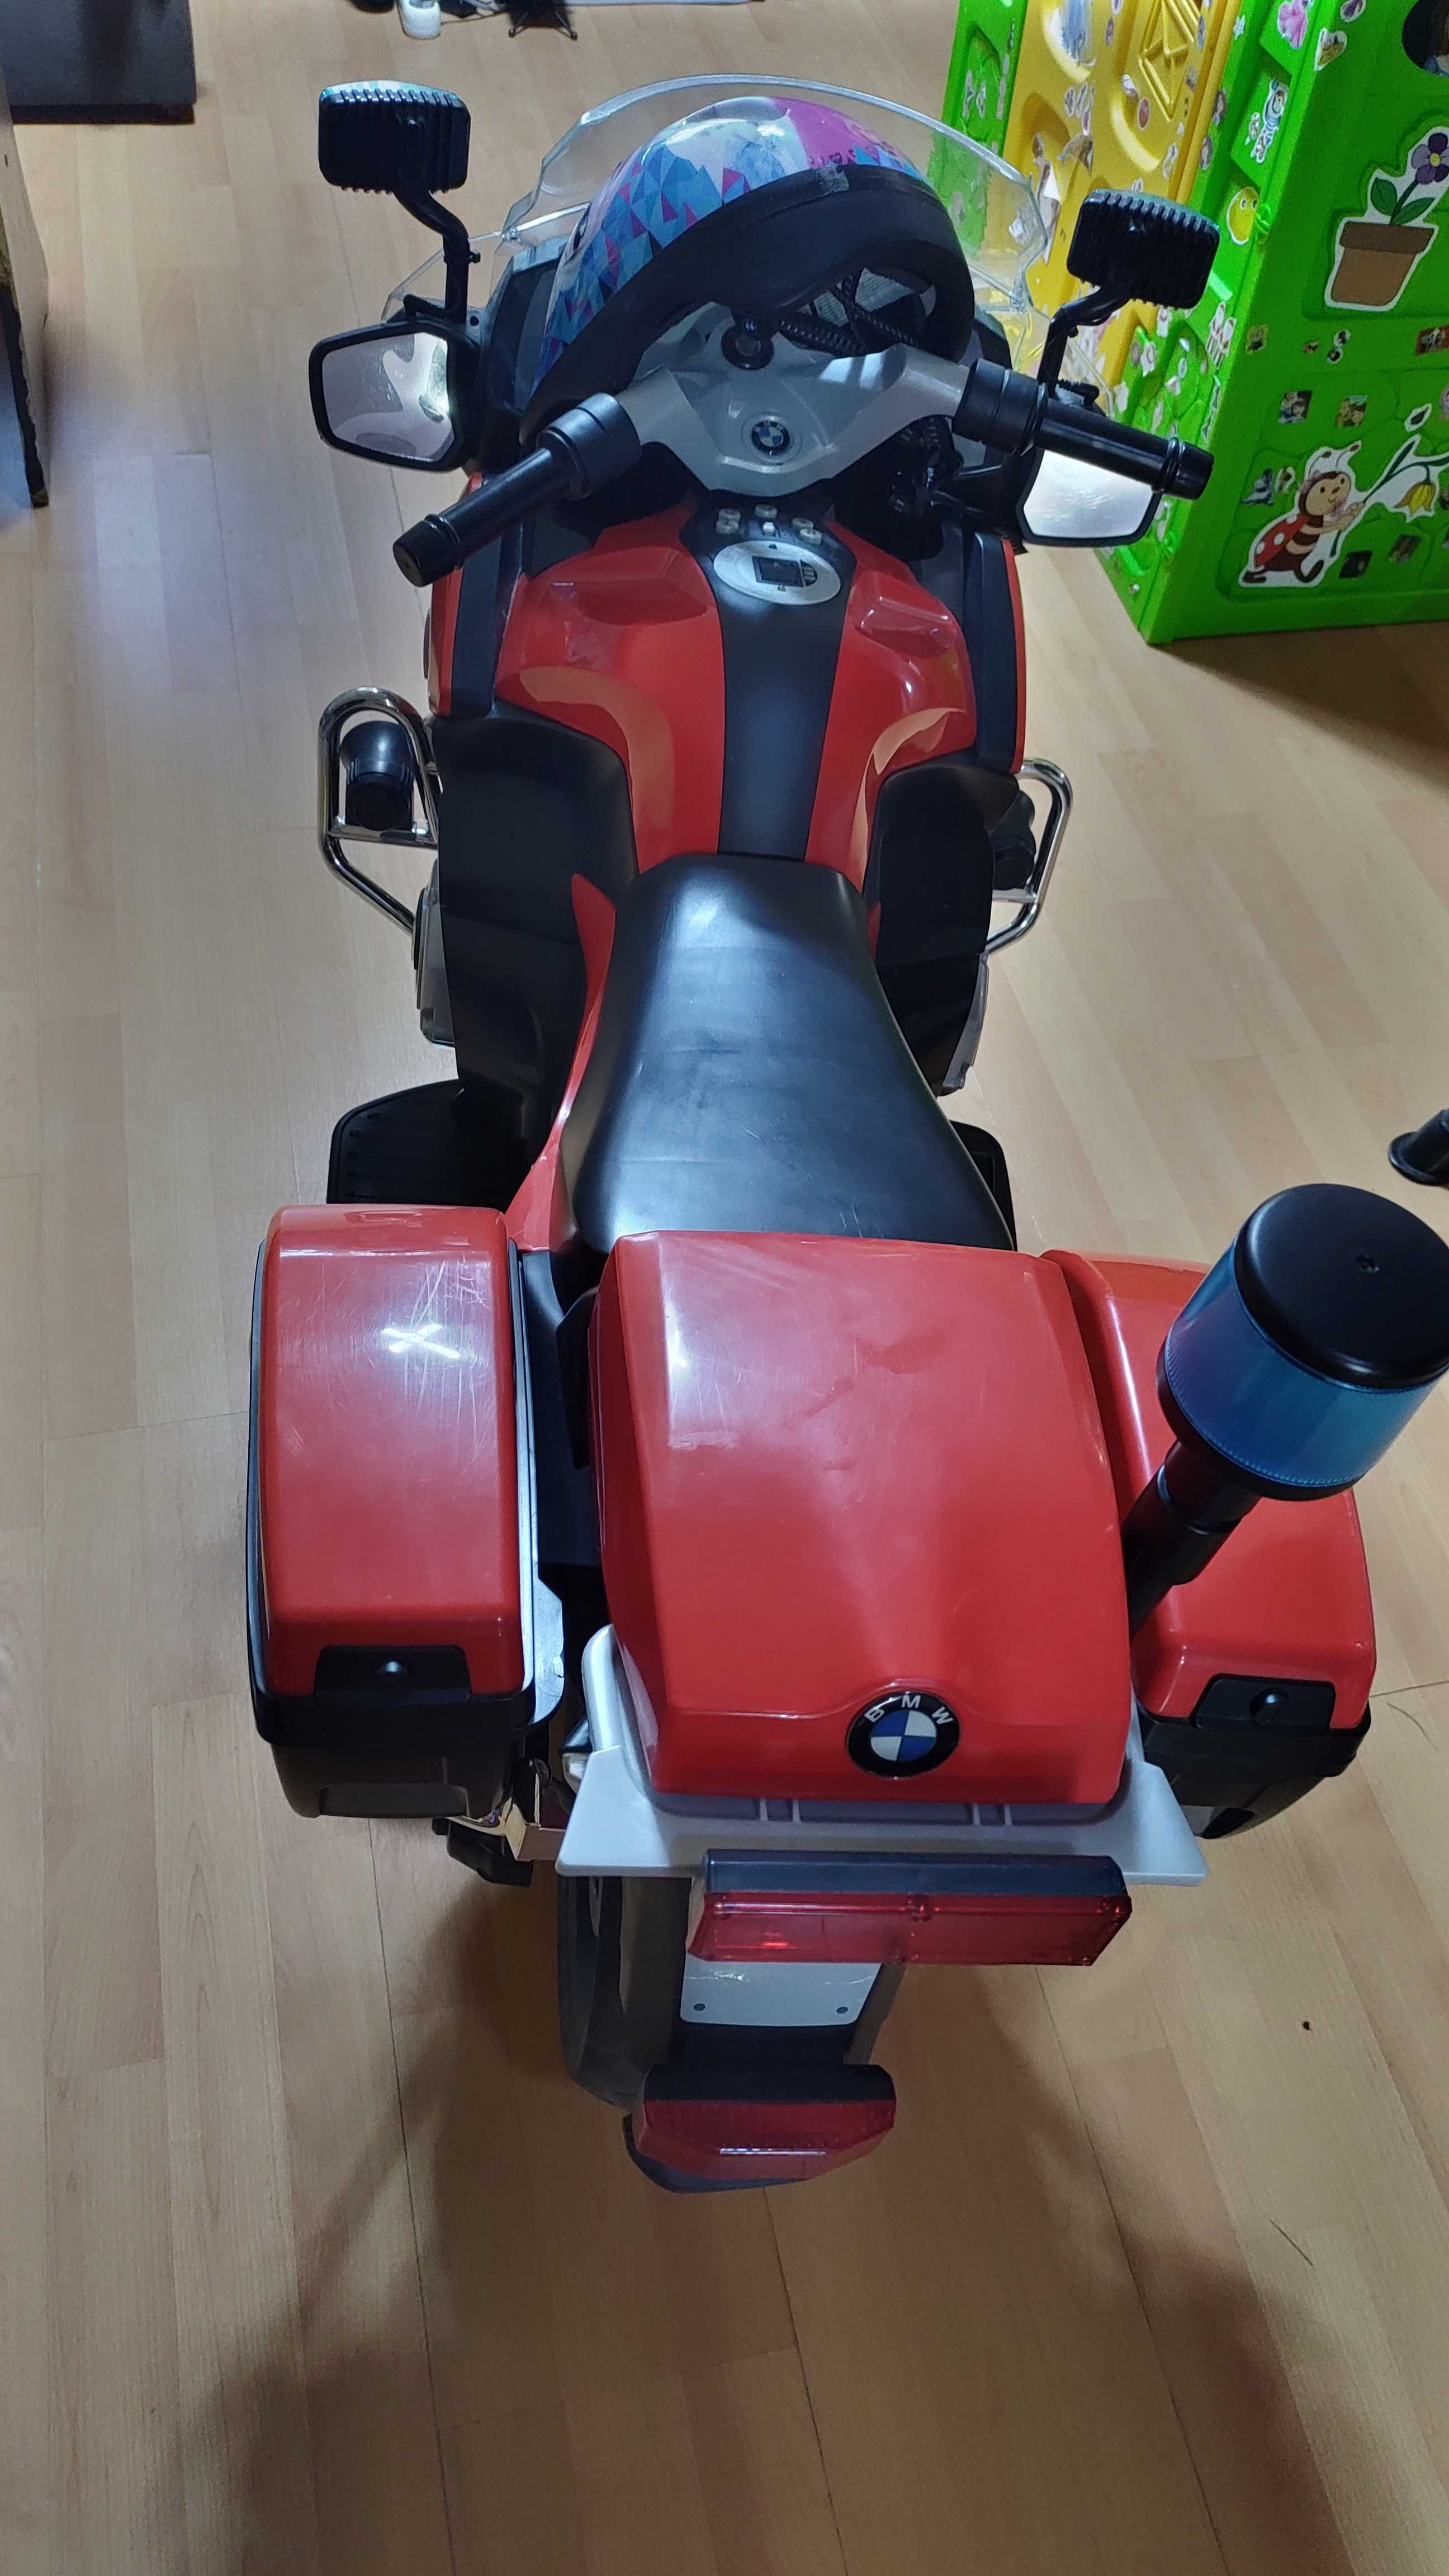 De vânzare Motocicleta electrica copii